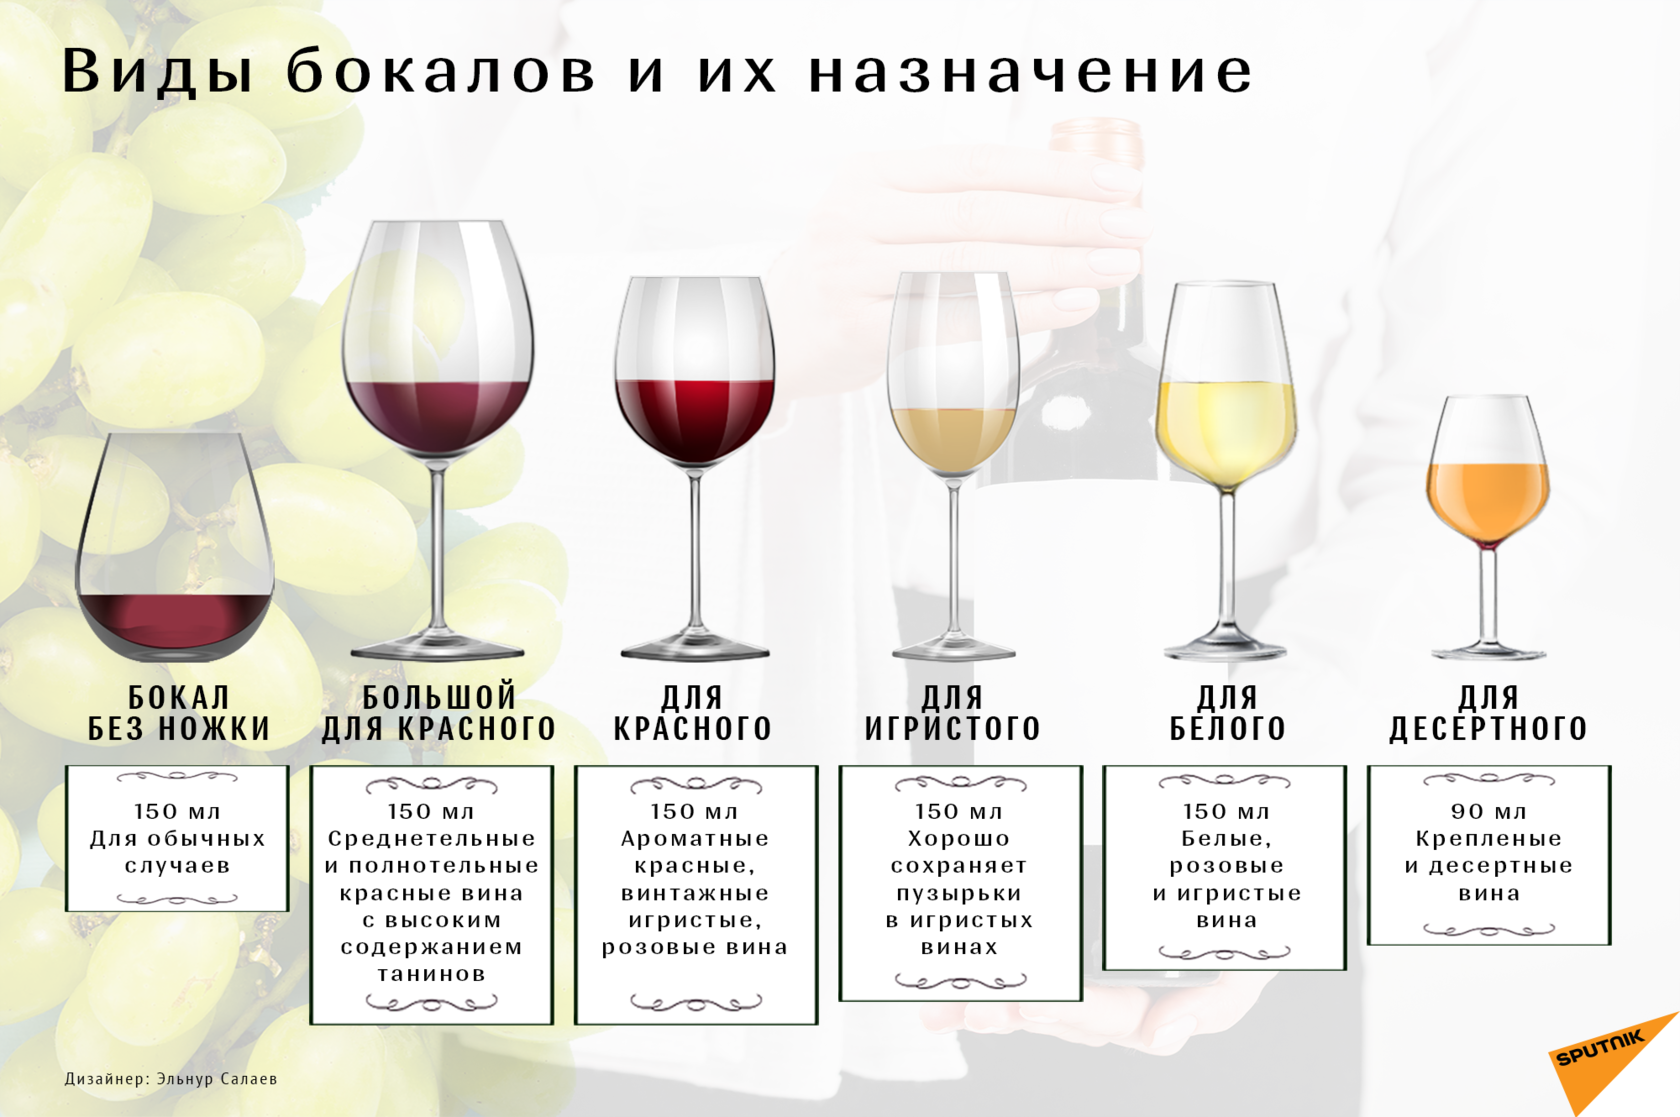 Как правильно пить вино из бокала: лучше дегустировать красное сухое, игристое какой температуры, ликёрное, десертное